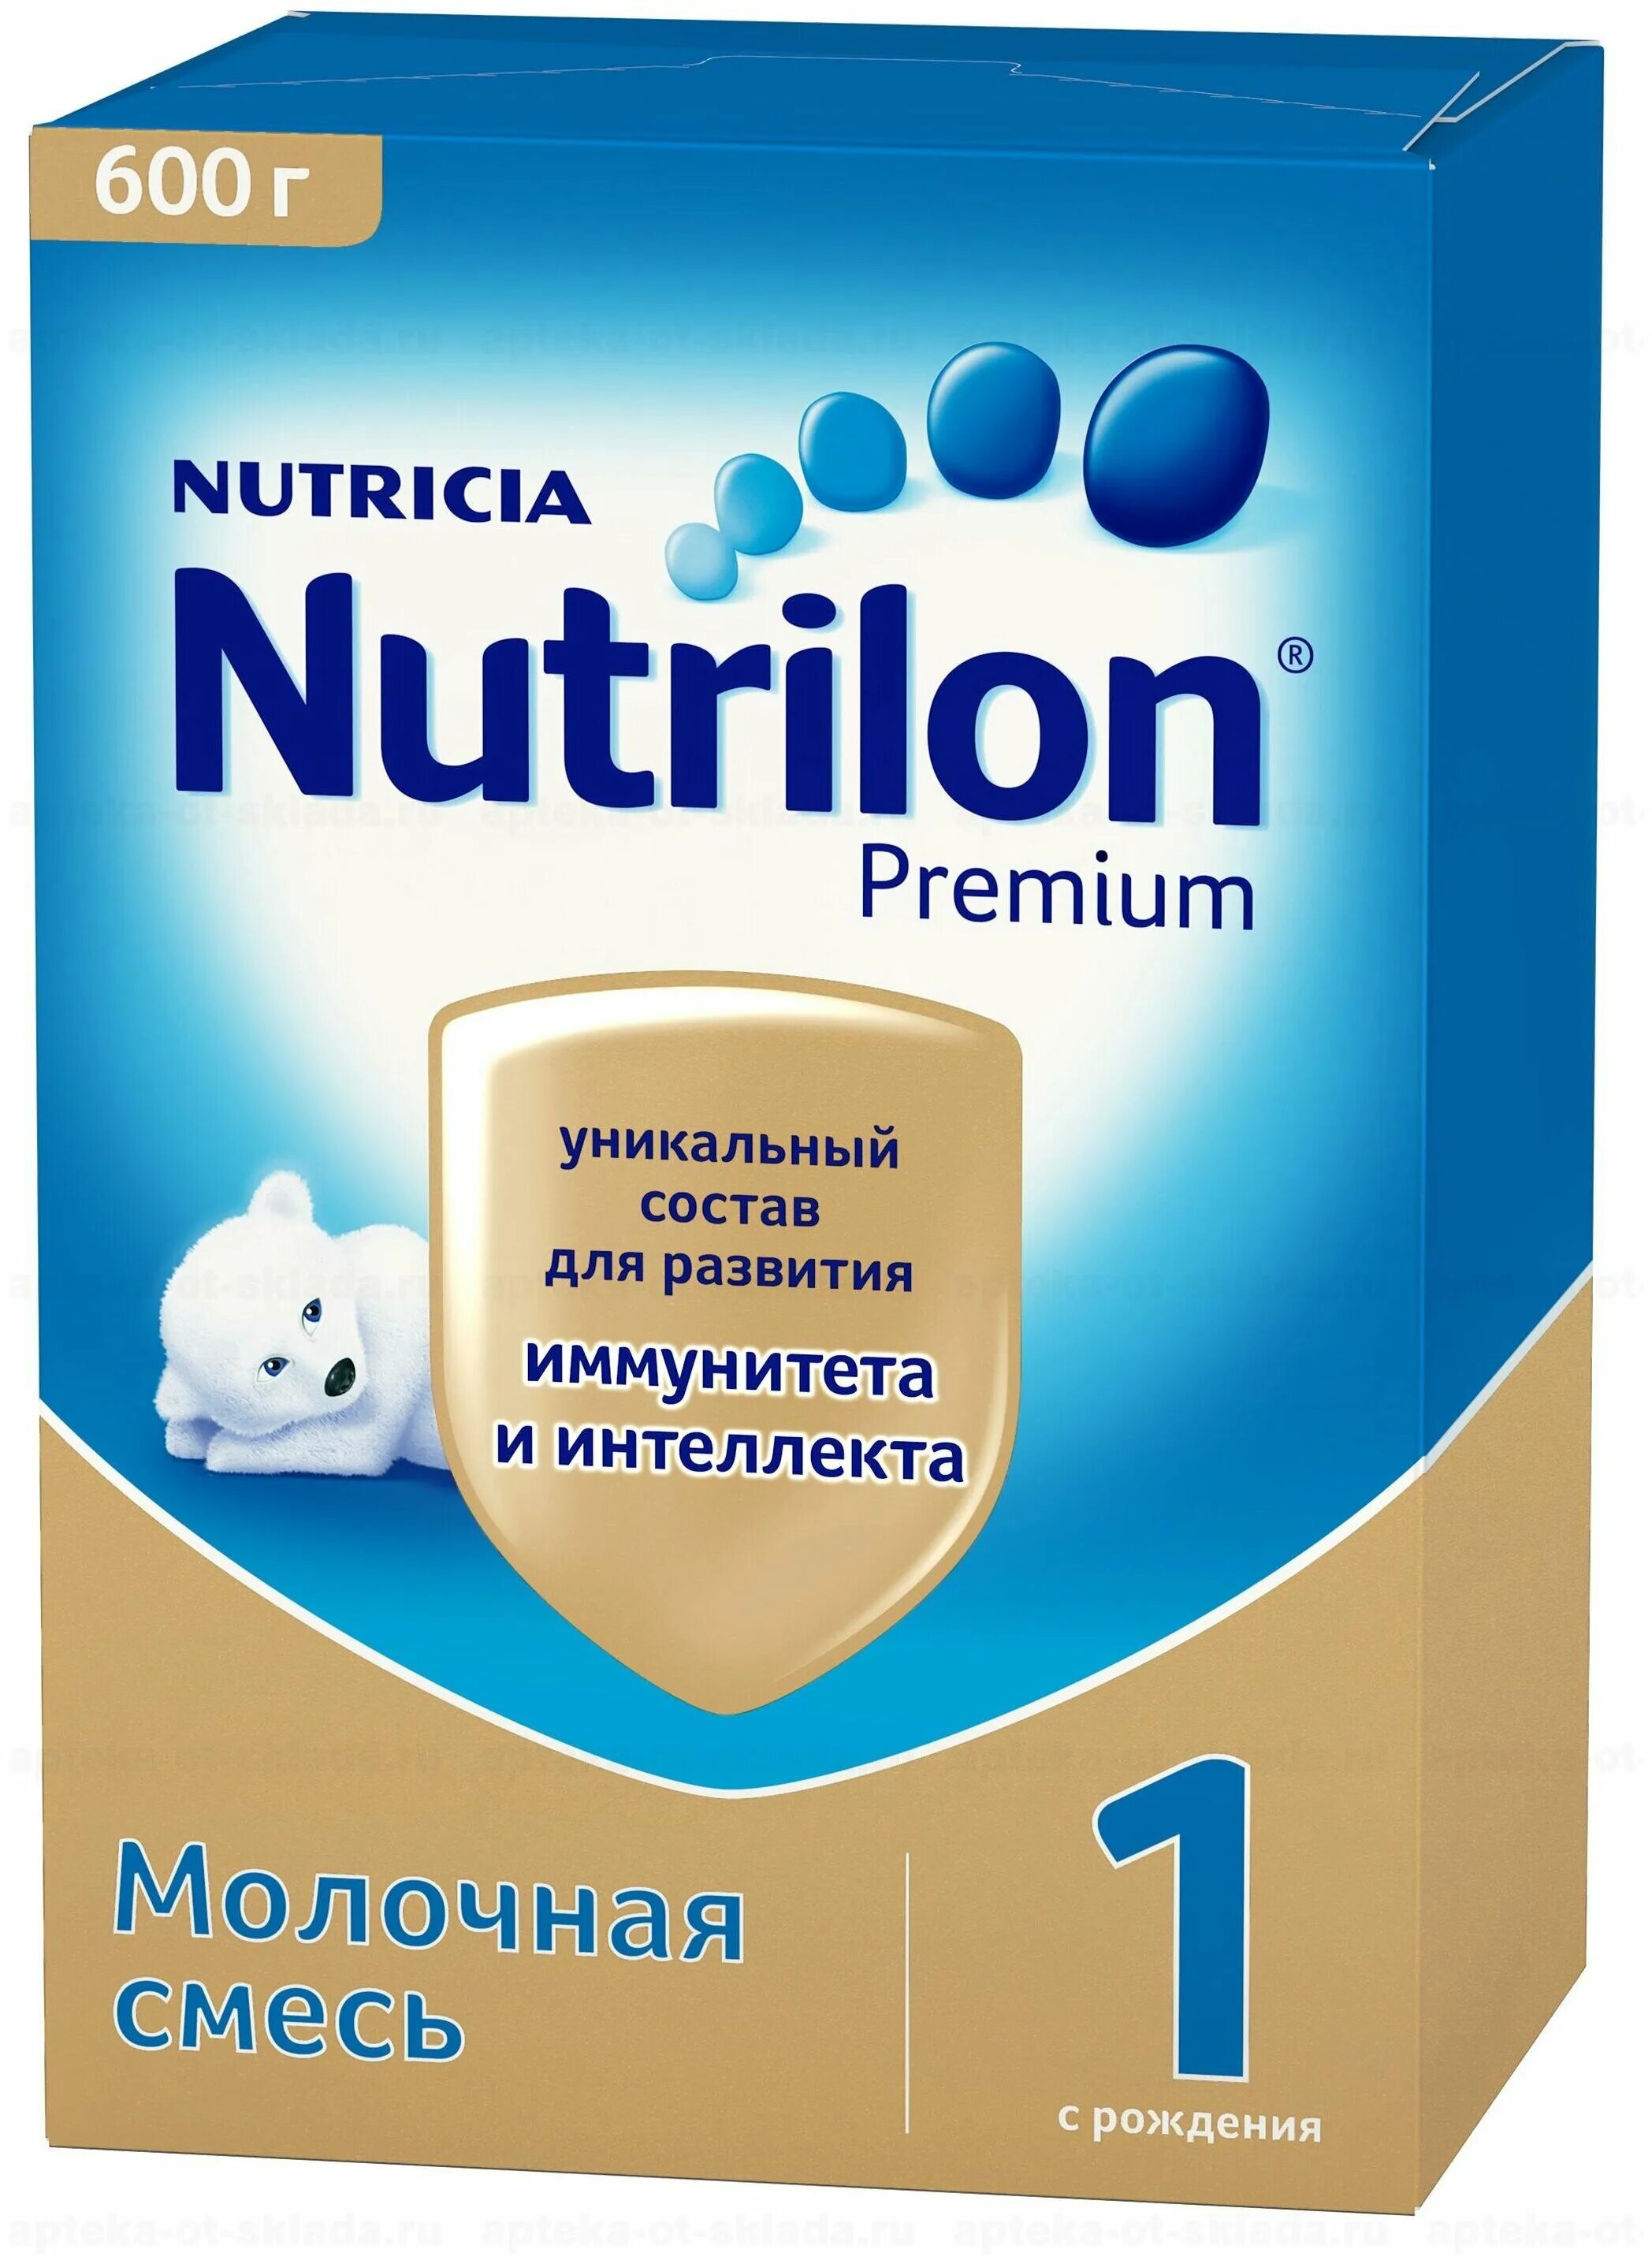 Nutrilon Premium 1. Nutrilon (Nutricia) 1 Premium. Смесь Нутрилон премиум 2 600г. Nutrilon-1 Premium смесь молочная сухая детская адаптированная. 1 premium c рождения отзывы